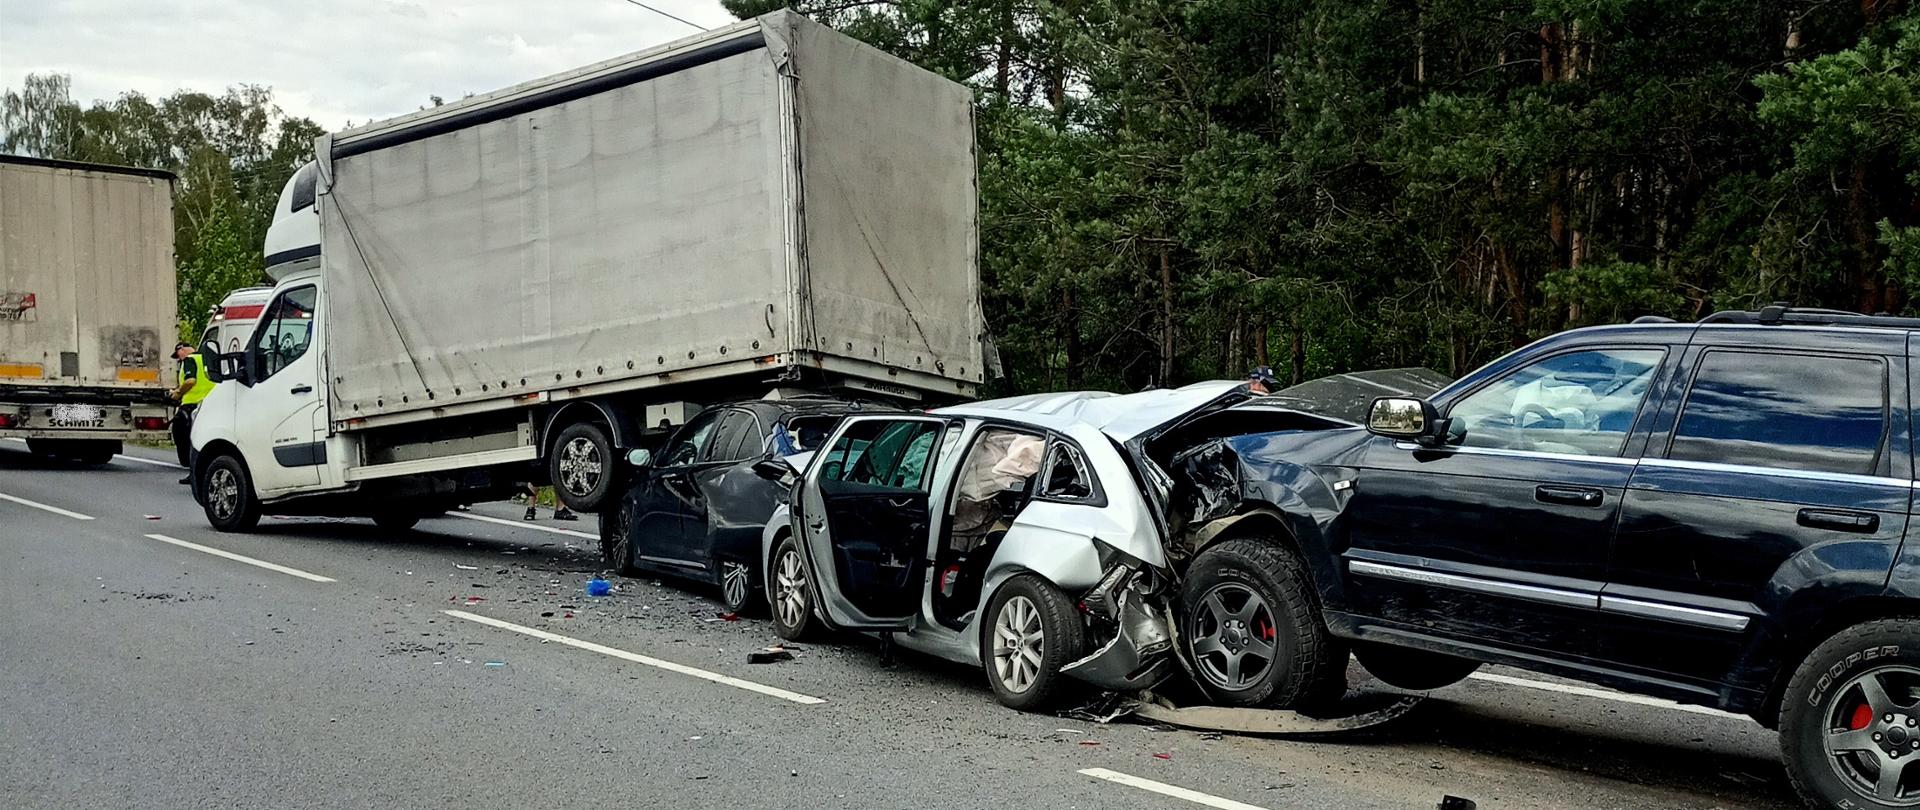 Zdjęcie przedstawia wypadek z udziałem czterech samochodów osobowych oraz samochodu dostawczego. Jeden samochód osobowy wjechał pod tył samochodu dostawczego, Kolejne samochody uderzały w tył. 